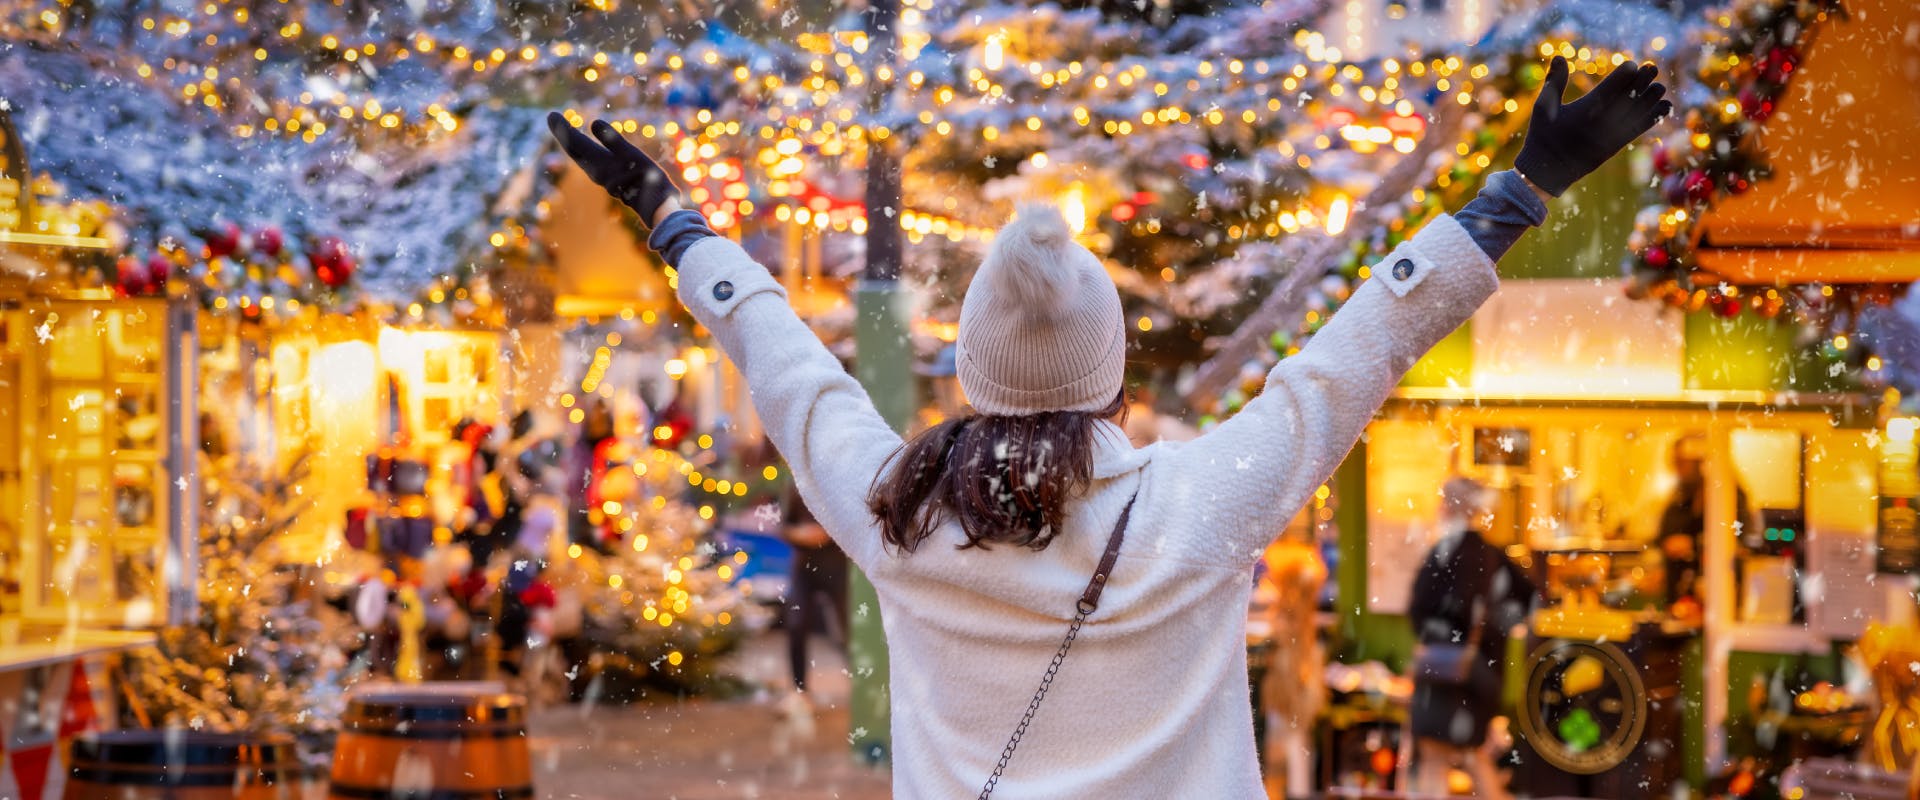 a woman stood in a Danish festive market in the center of Copenhagen